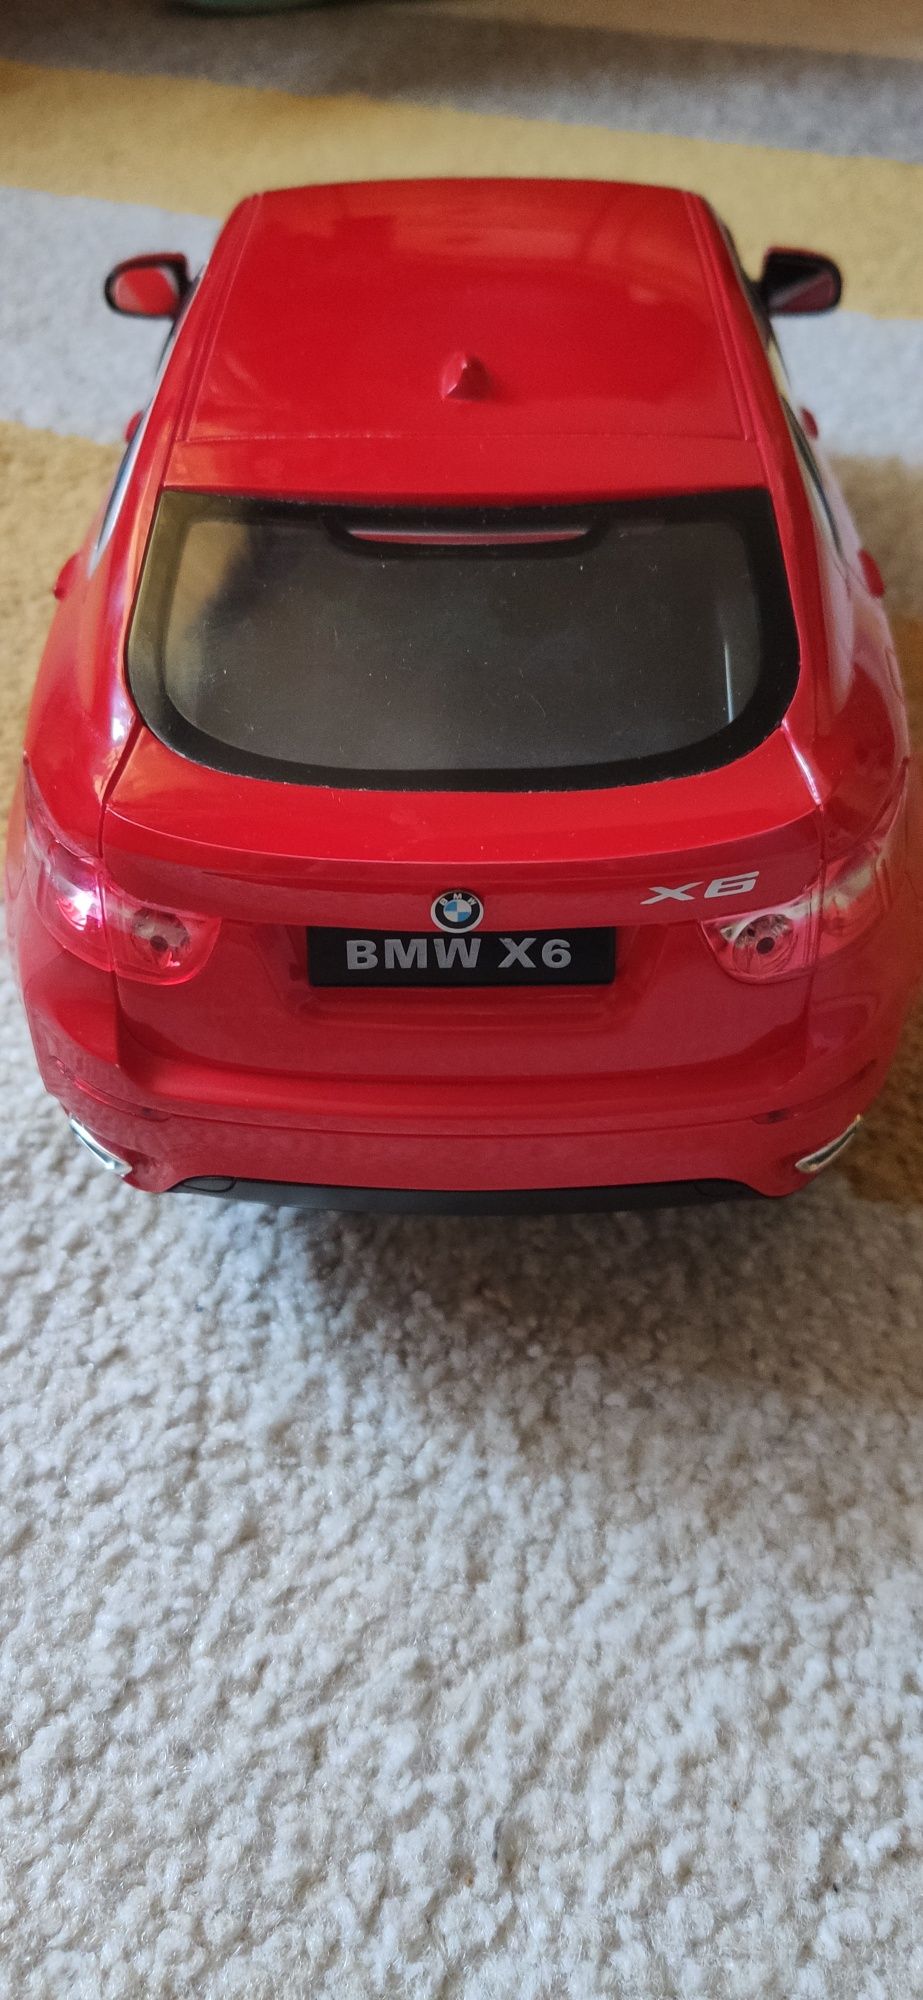 Zabawka auto/ samochód zdalnie sterowany BMW X6